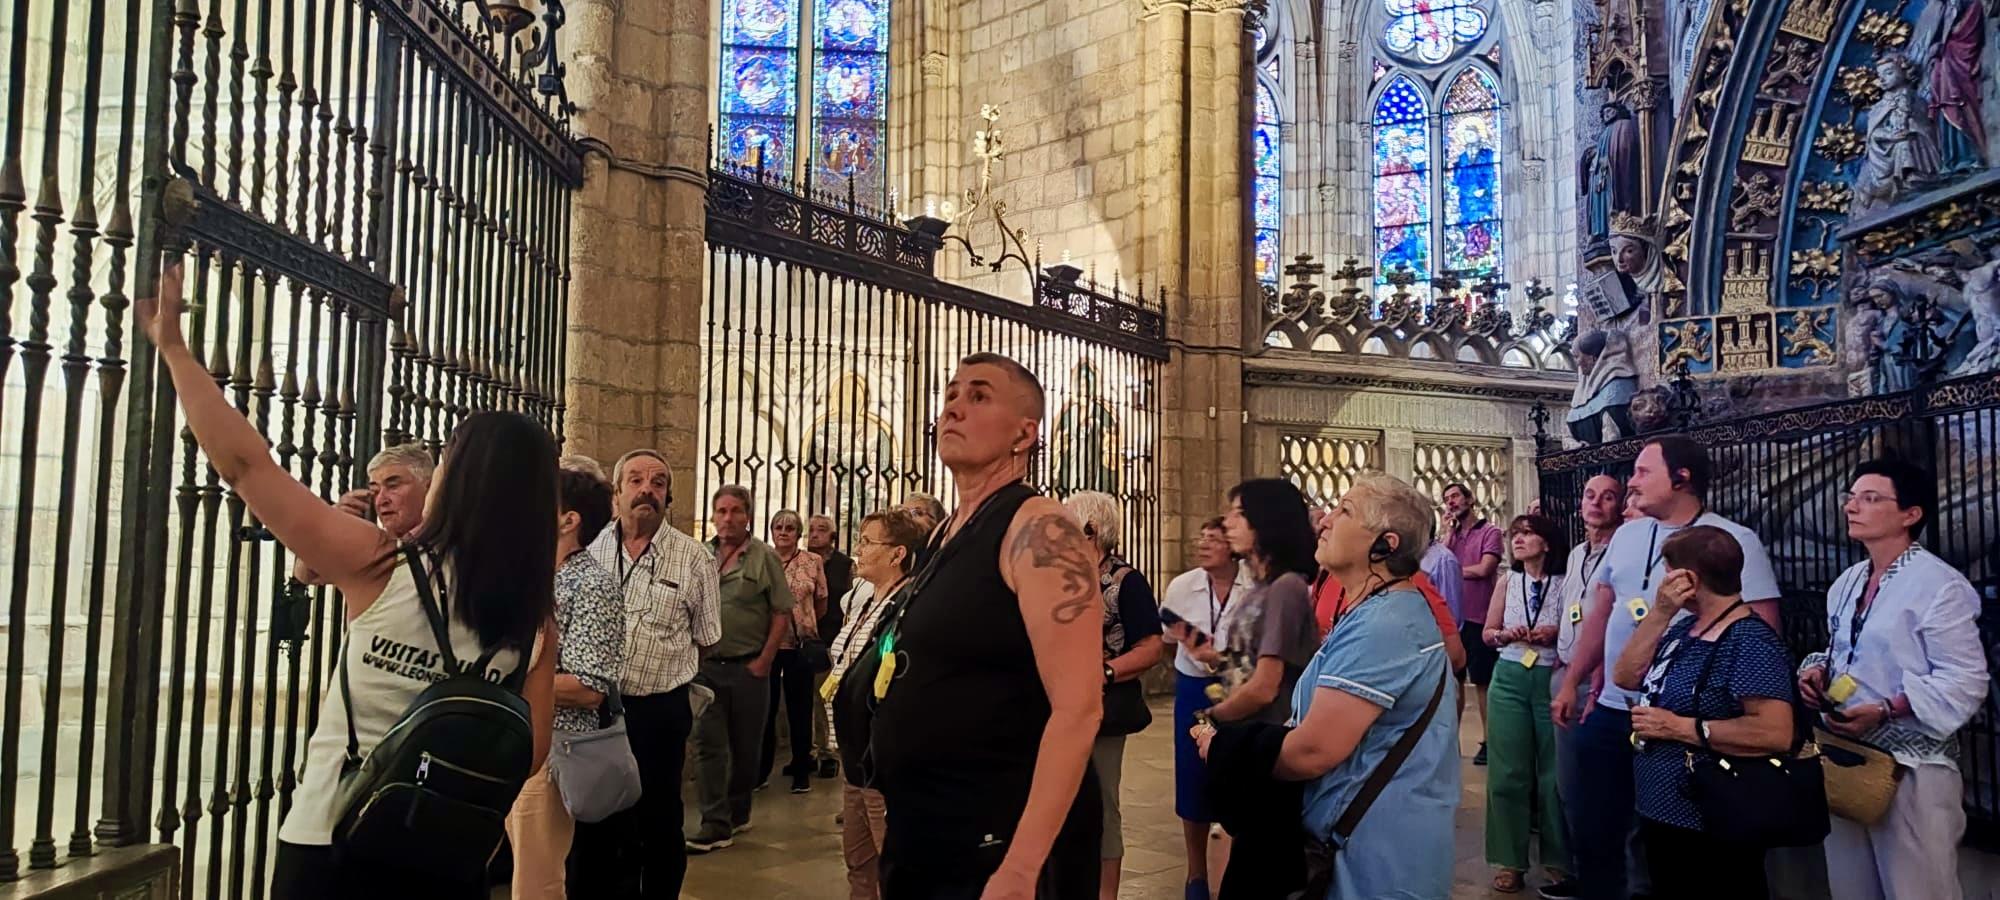 Para aquellas personas que no quieren ir con desconocidos, te ofrecemos una visita exclusiva, en la que a través de la historia, arte y datos interesantes, podrás sumergirte en el pasado, presente y futuro de nuestro monumento más emblemático, La Catedral de León.